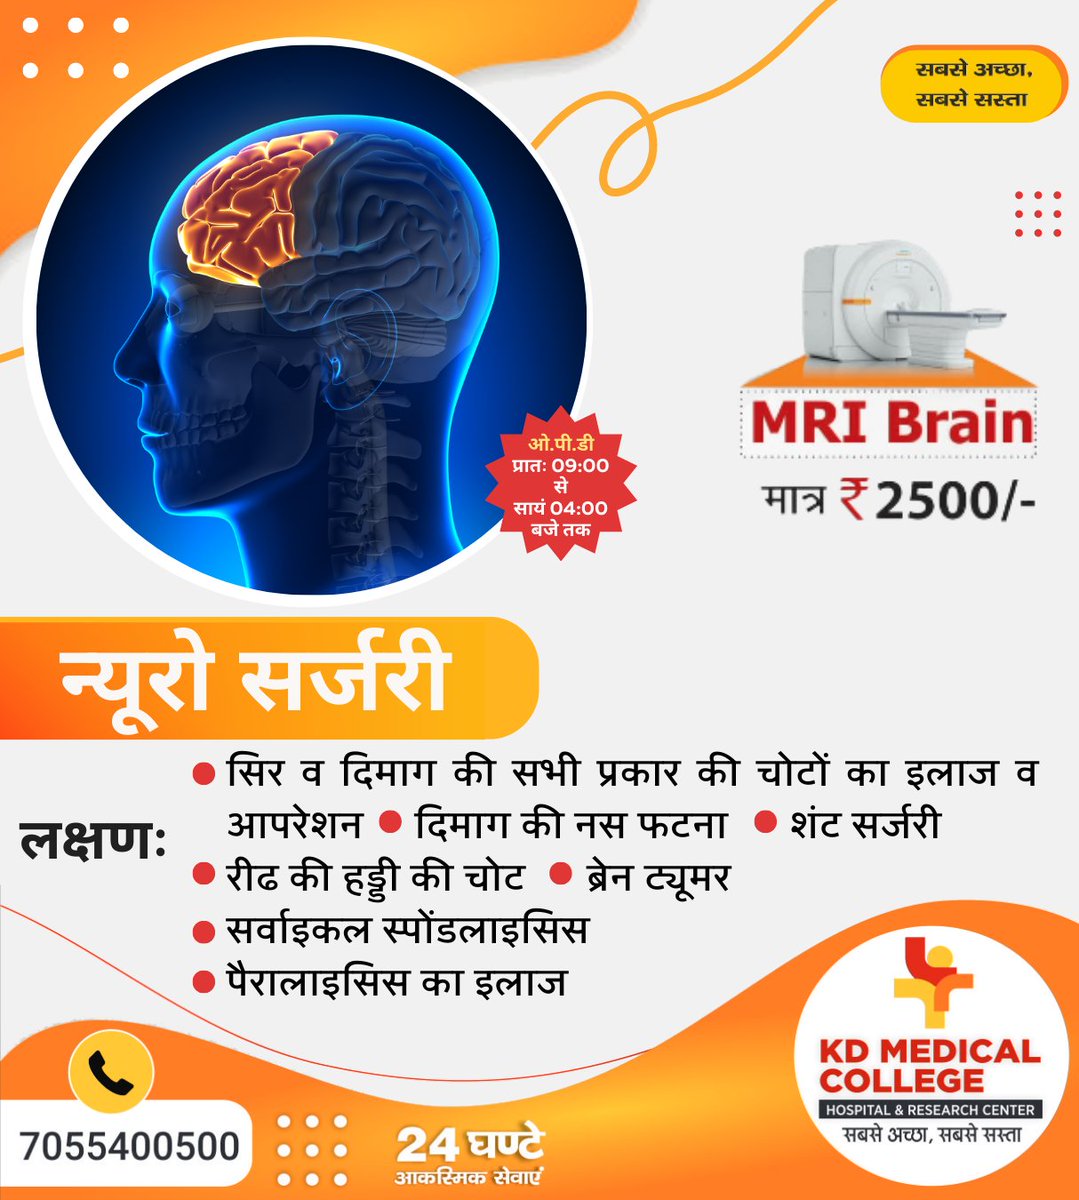 हमारे यहाँ न्यूरो संबंधित तमाम बीमारियों का इलाज उपलब्ध है। उच्च प्रशिक्षित डॉक्टरों की टीम रोगों का इलाज के.डी हॉस्पिटल मथुरा में उपलब्ध है।
.
kdmch.in | 18002704121
.
#KDMCH #KDMedicalCollege #MedicalCollege #Medicaleducation #Agra #Aligarh #Mathura #neurological